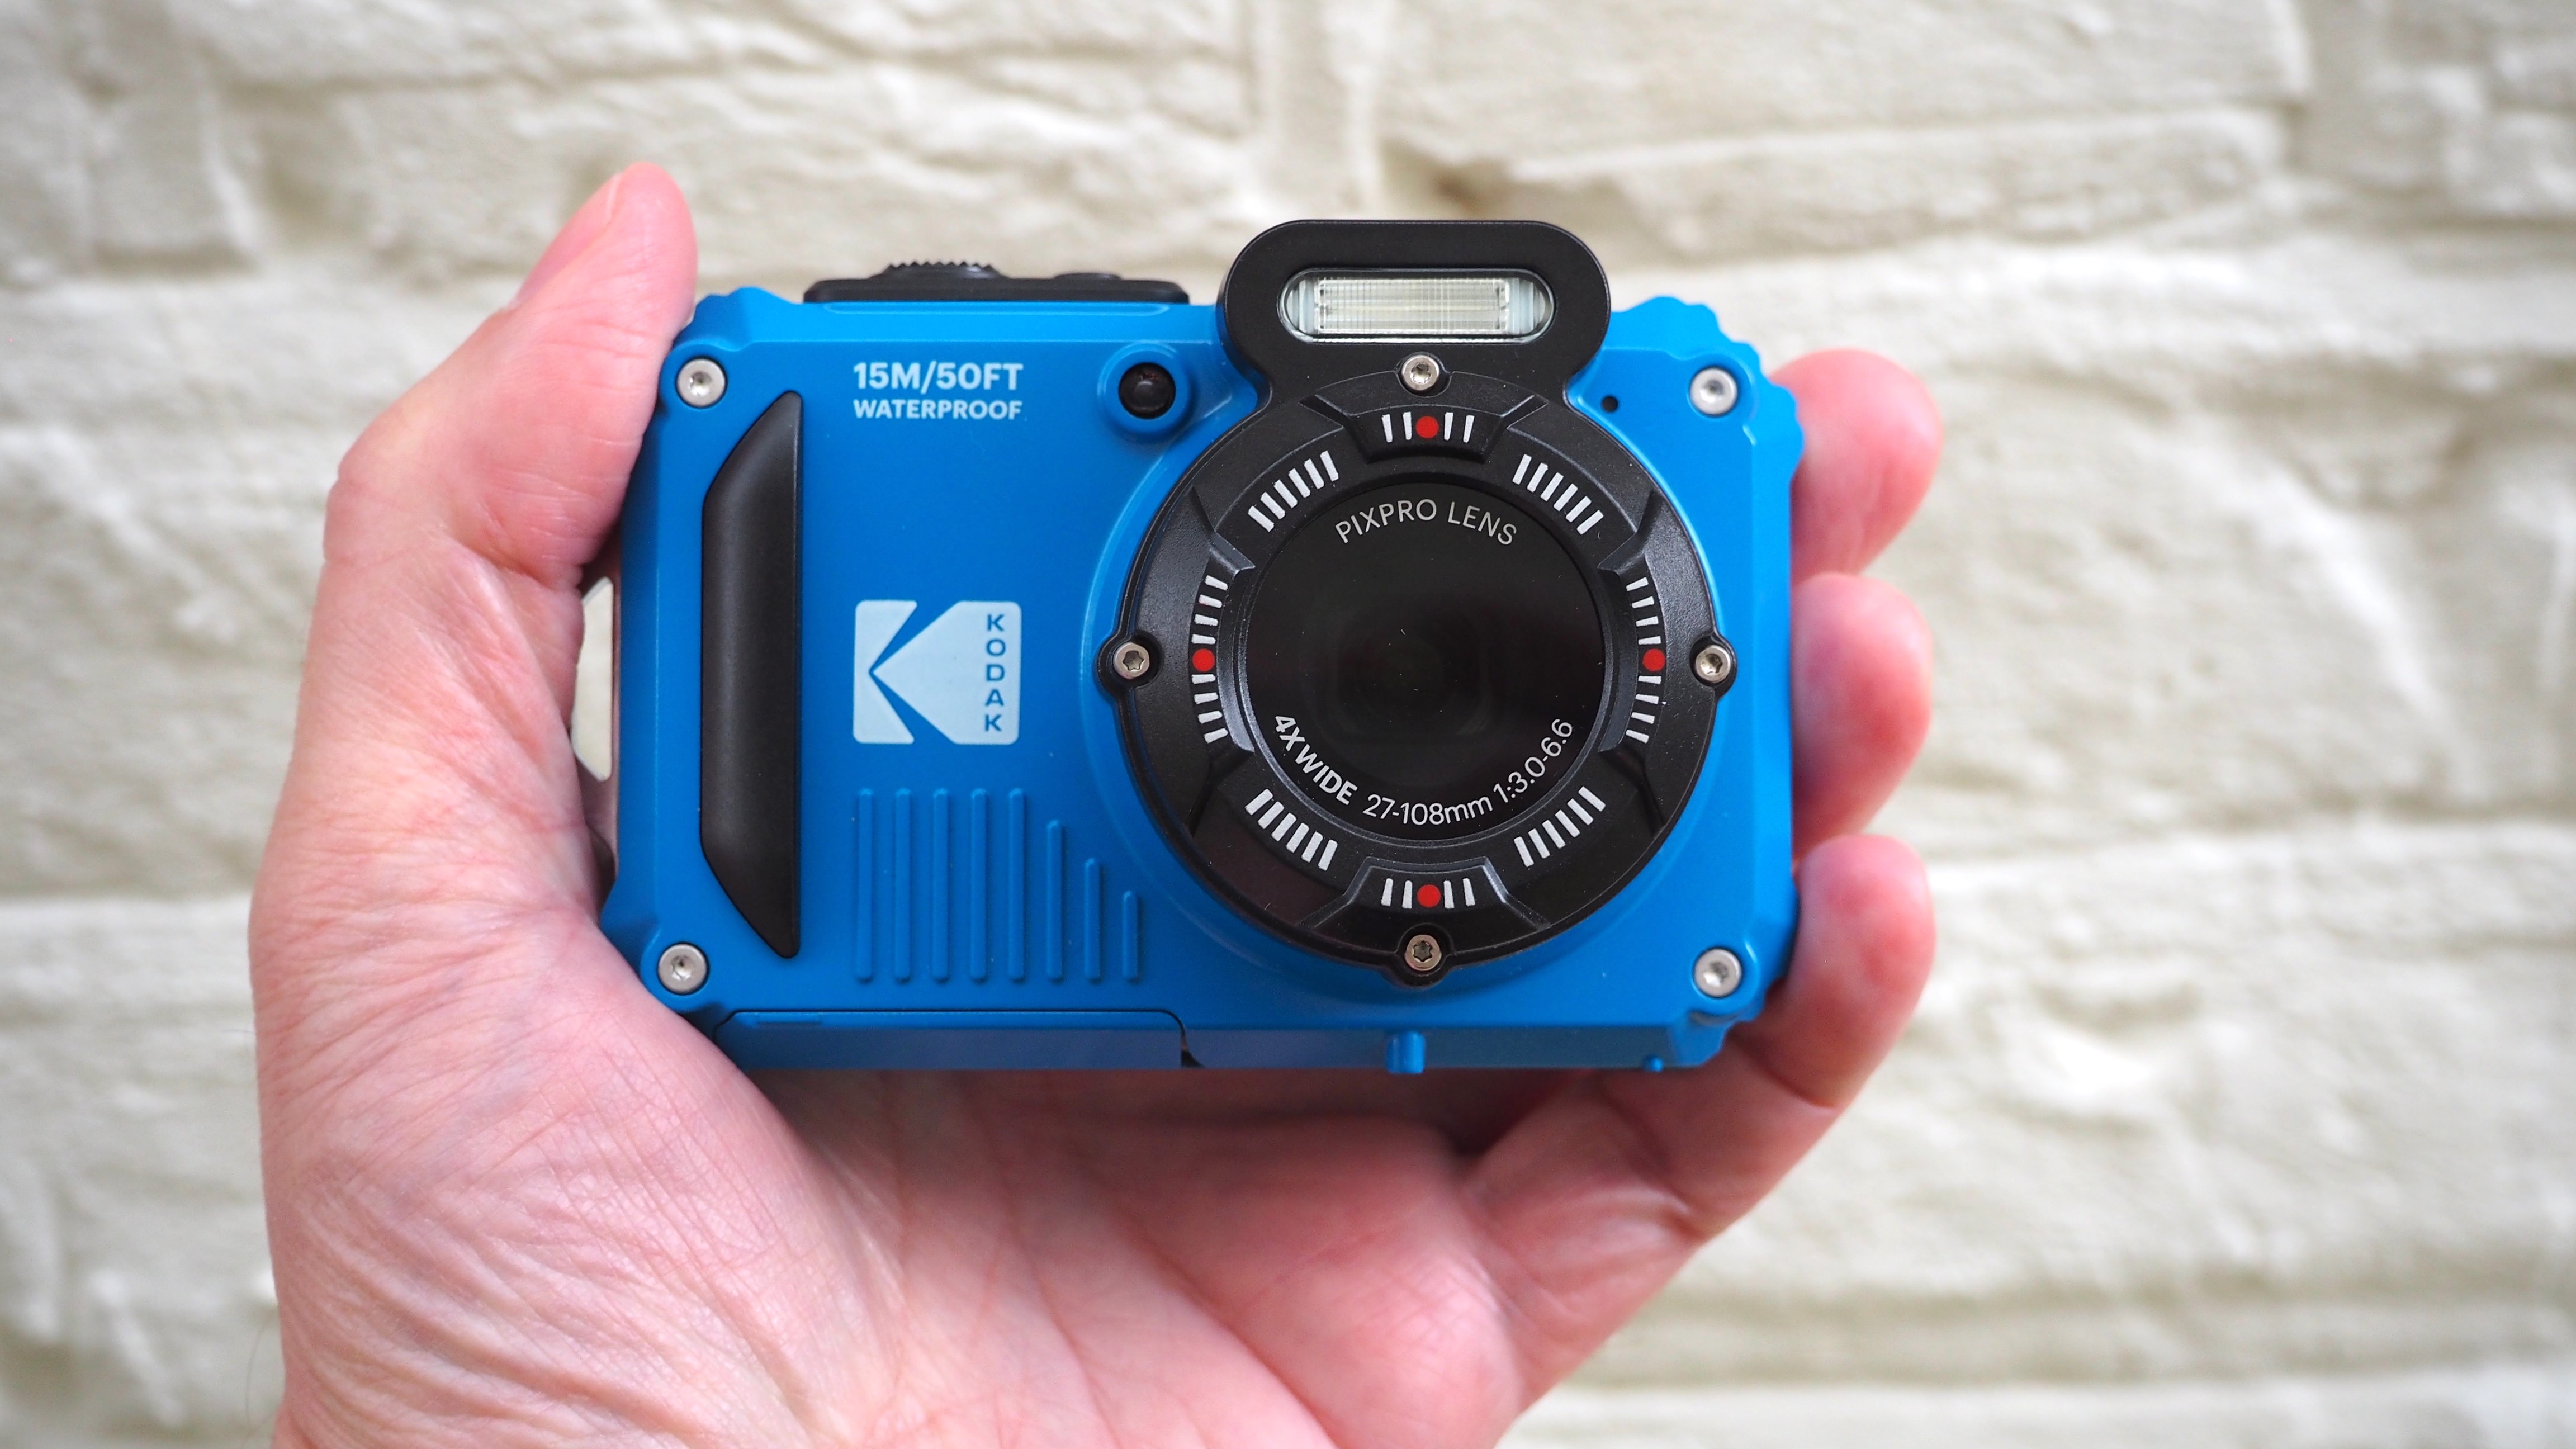 Kodak PIXPRO FZ55 16.4 Megapixel Compact Camera, Black